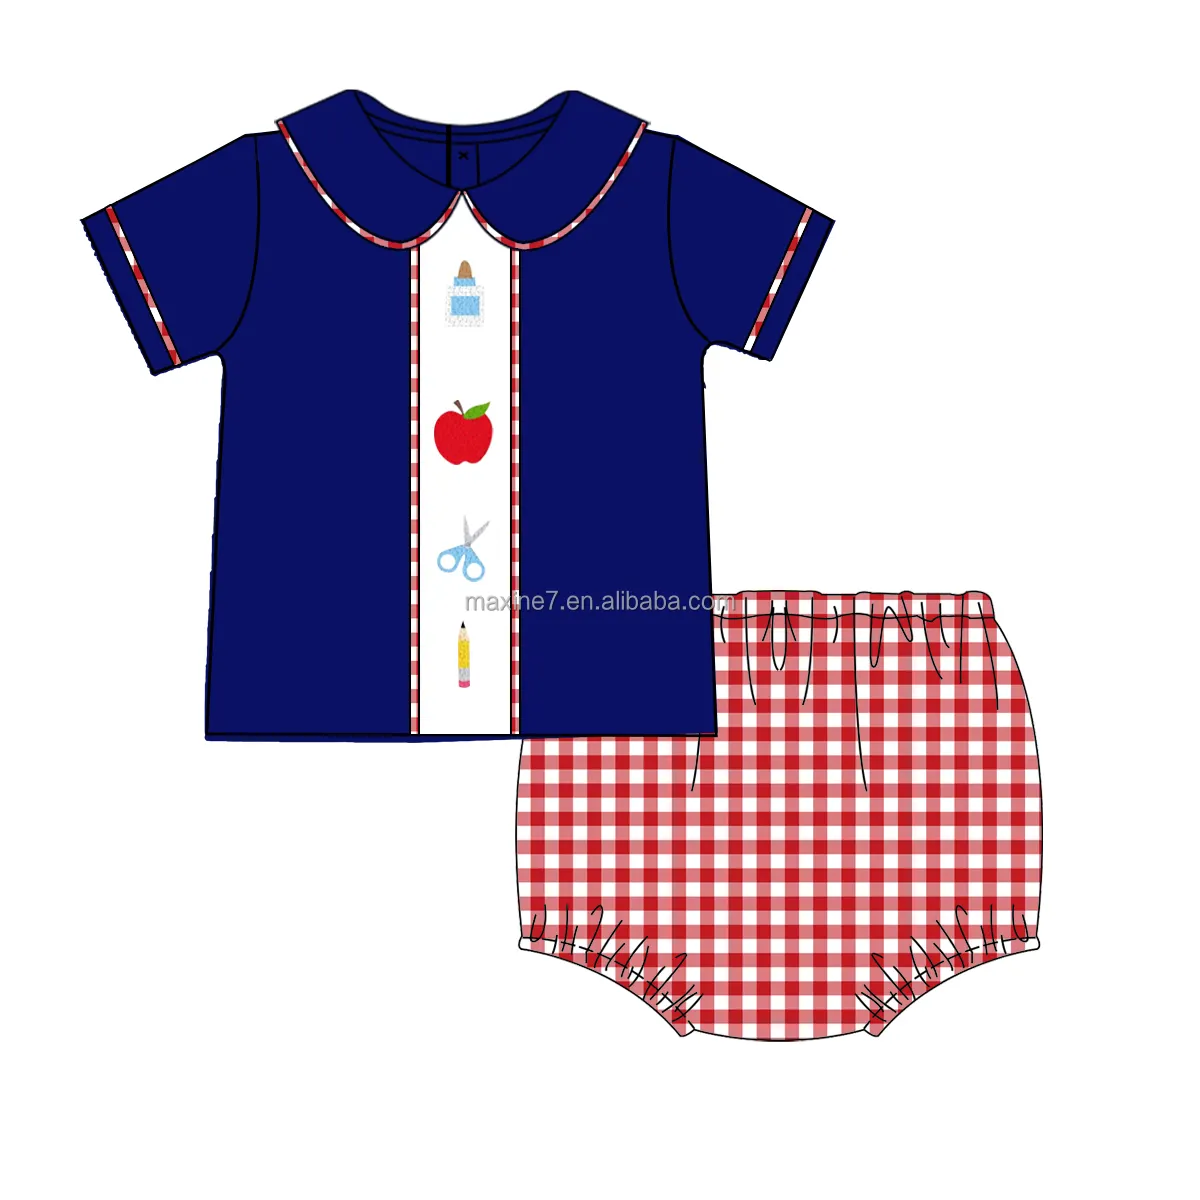 ग्रीष्मकालीन बच्चों के कपड़े, स्कूल वापस जाने वाले बच्चों के शर्ट और छोटे आउटफिट, बच्चों के लड़कों के फ्रेंच नॉट कपड़े के सेट